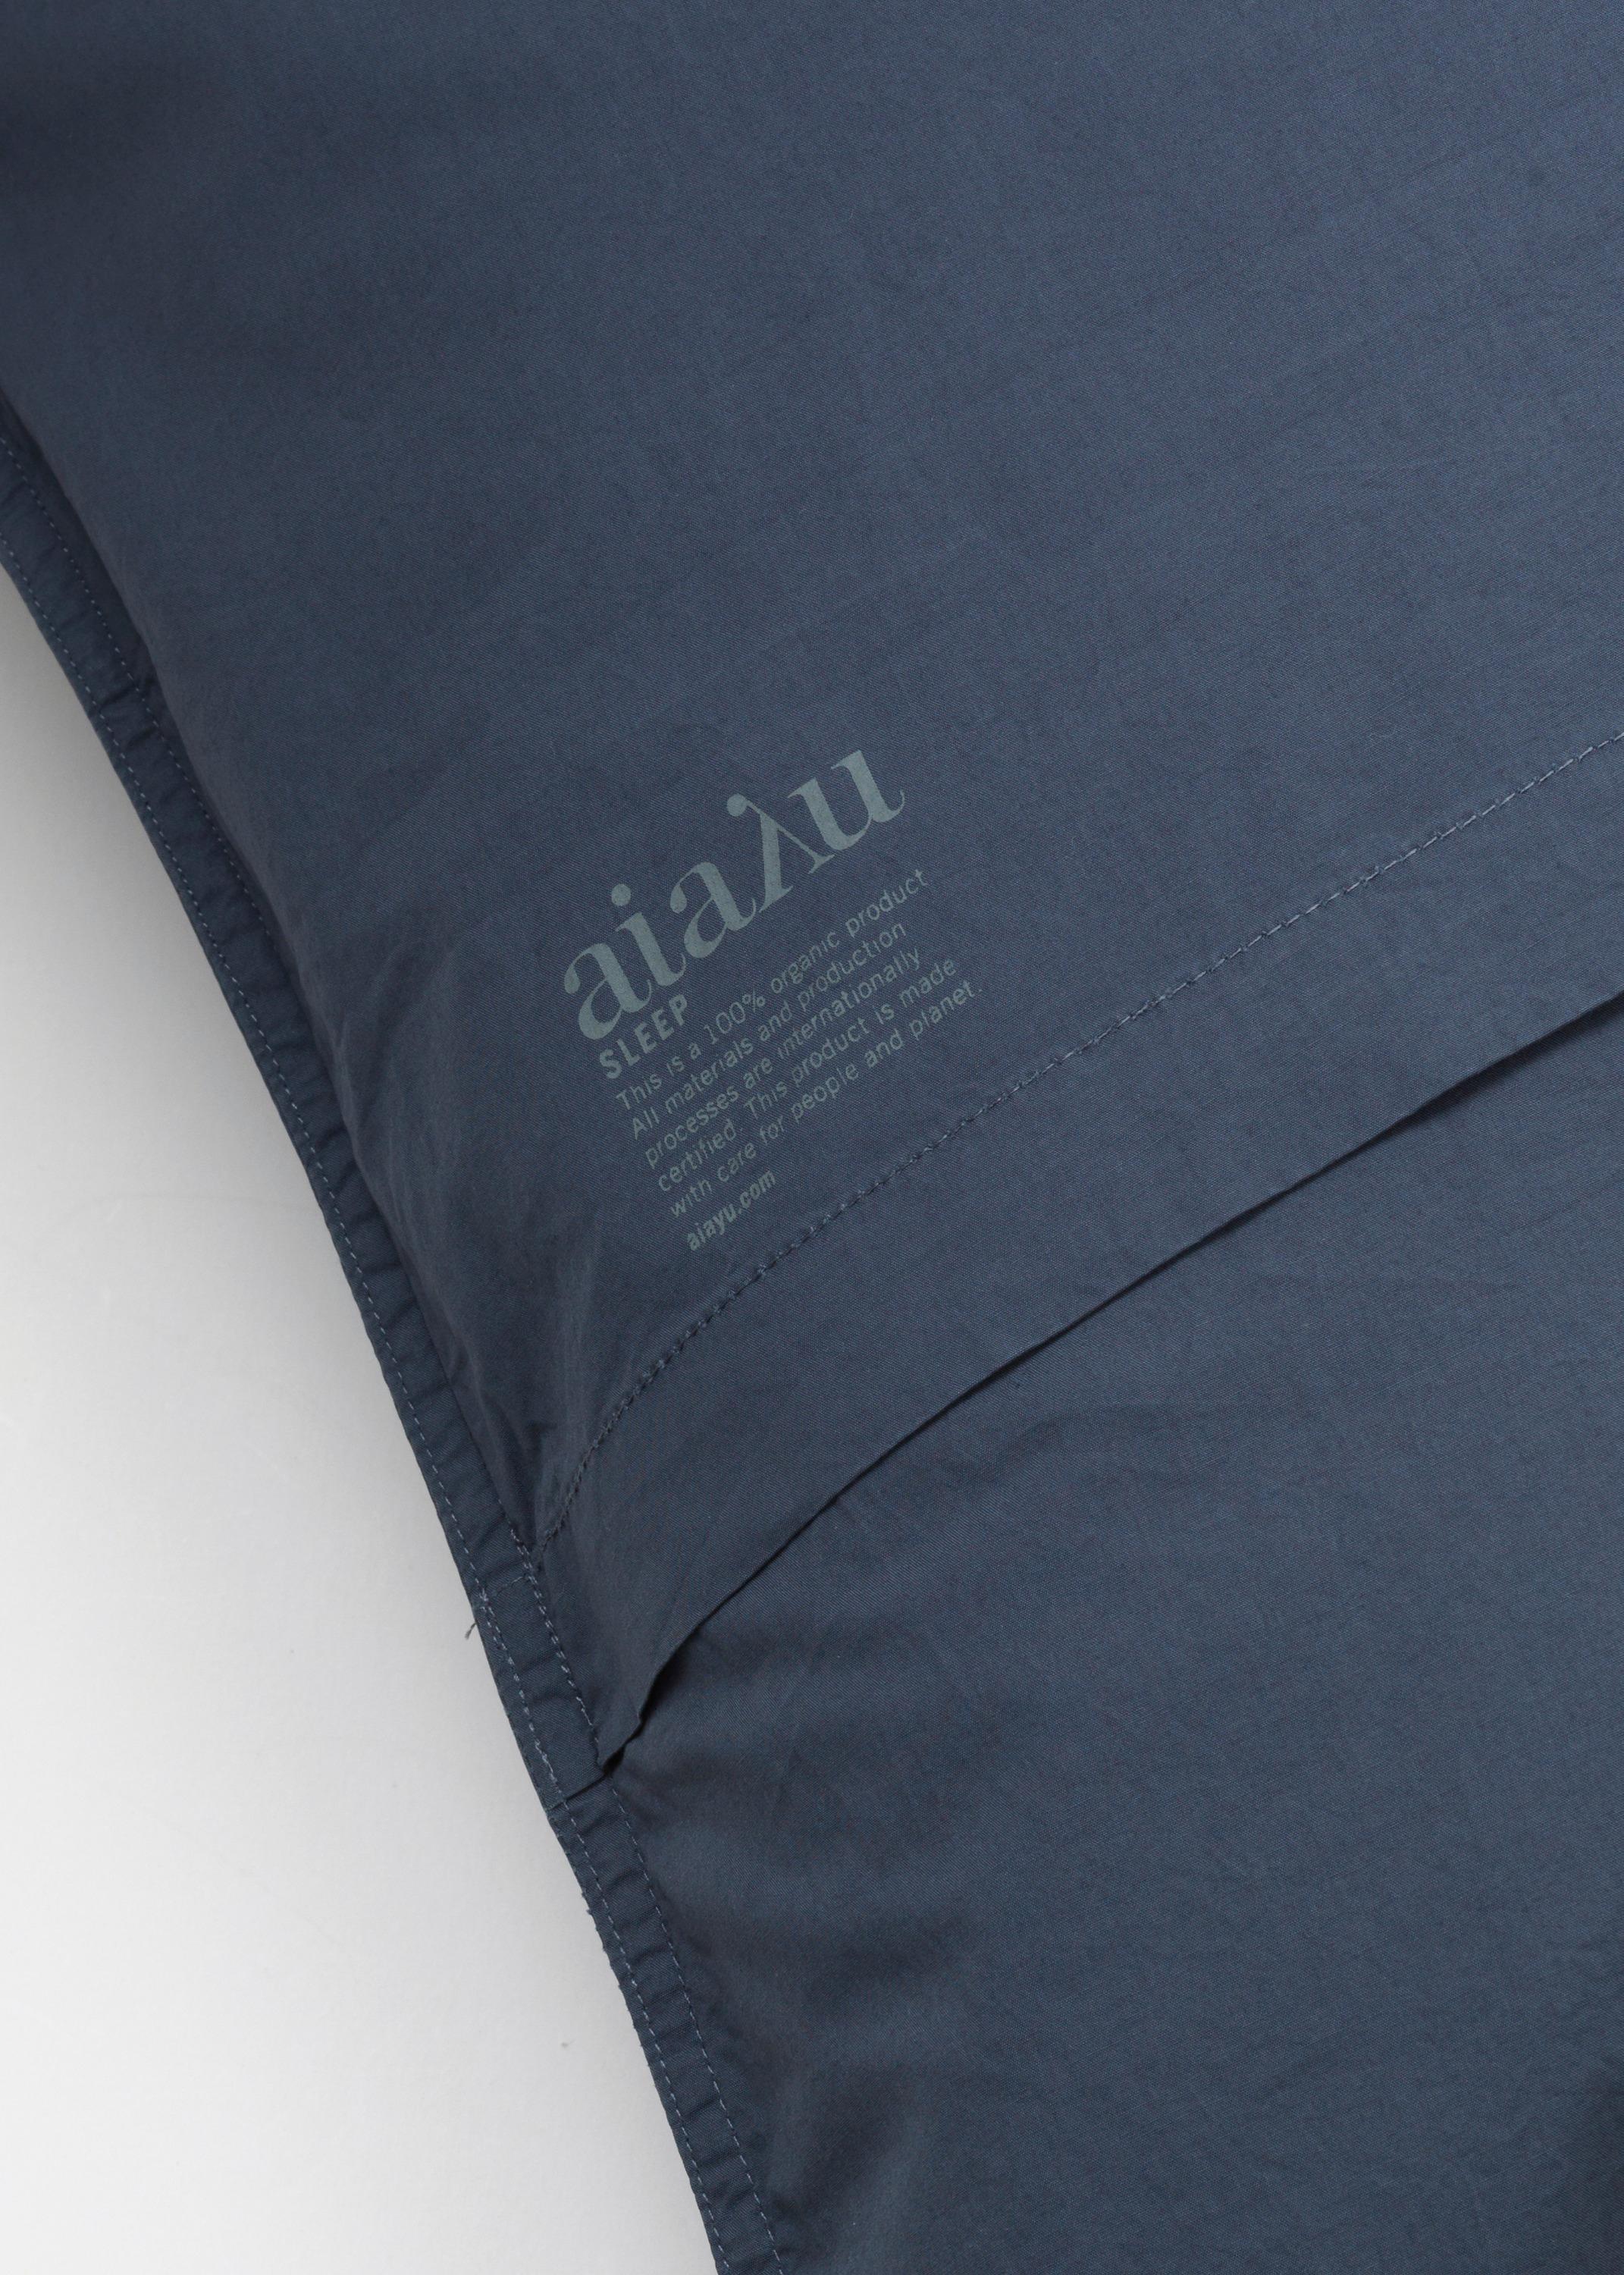 Bedlinen - Pillow case (60x63) Thumbnail